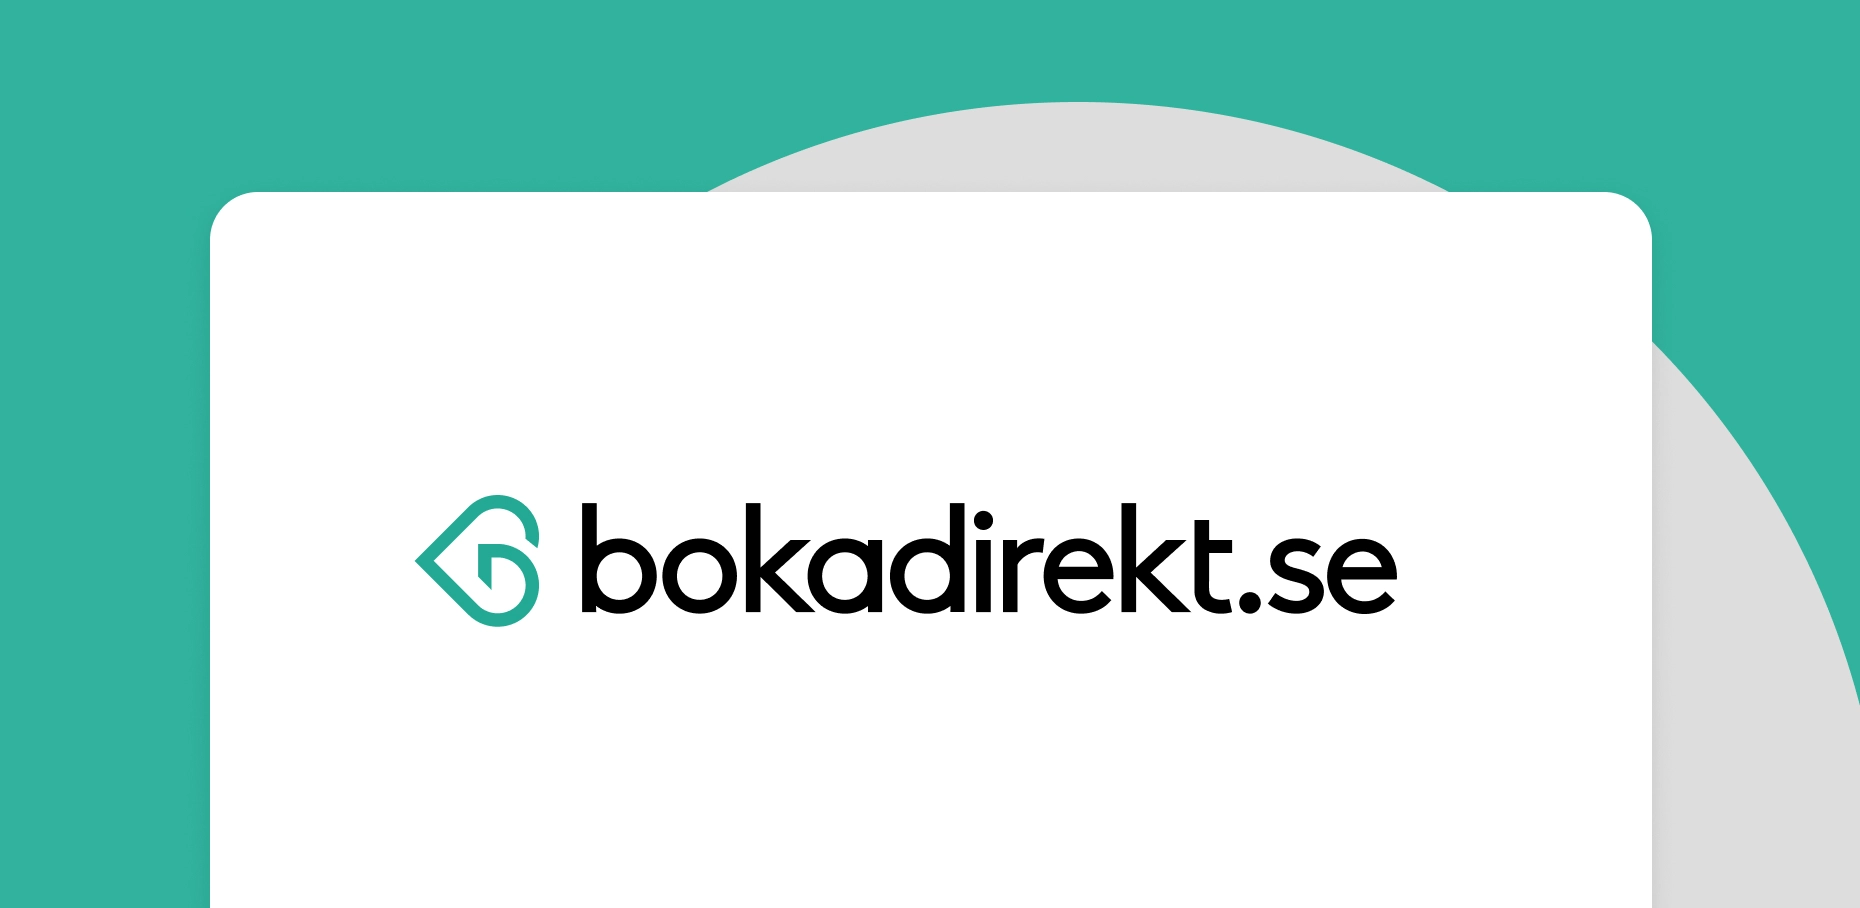 Bokadirect